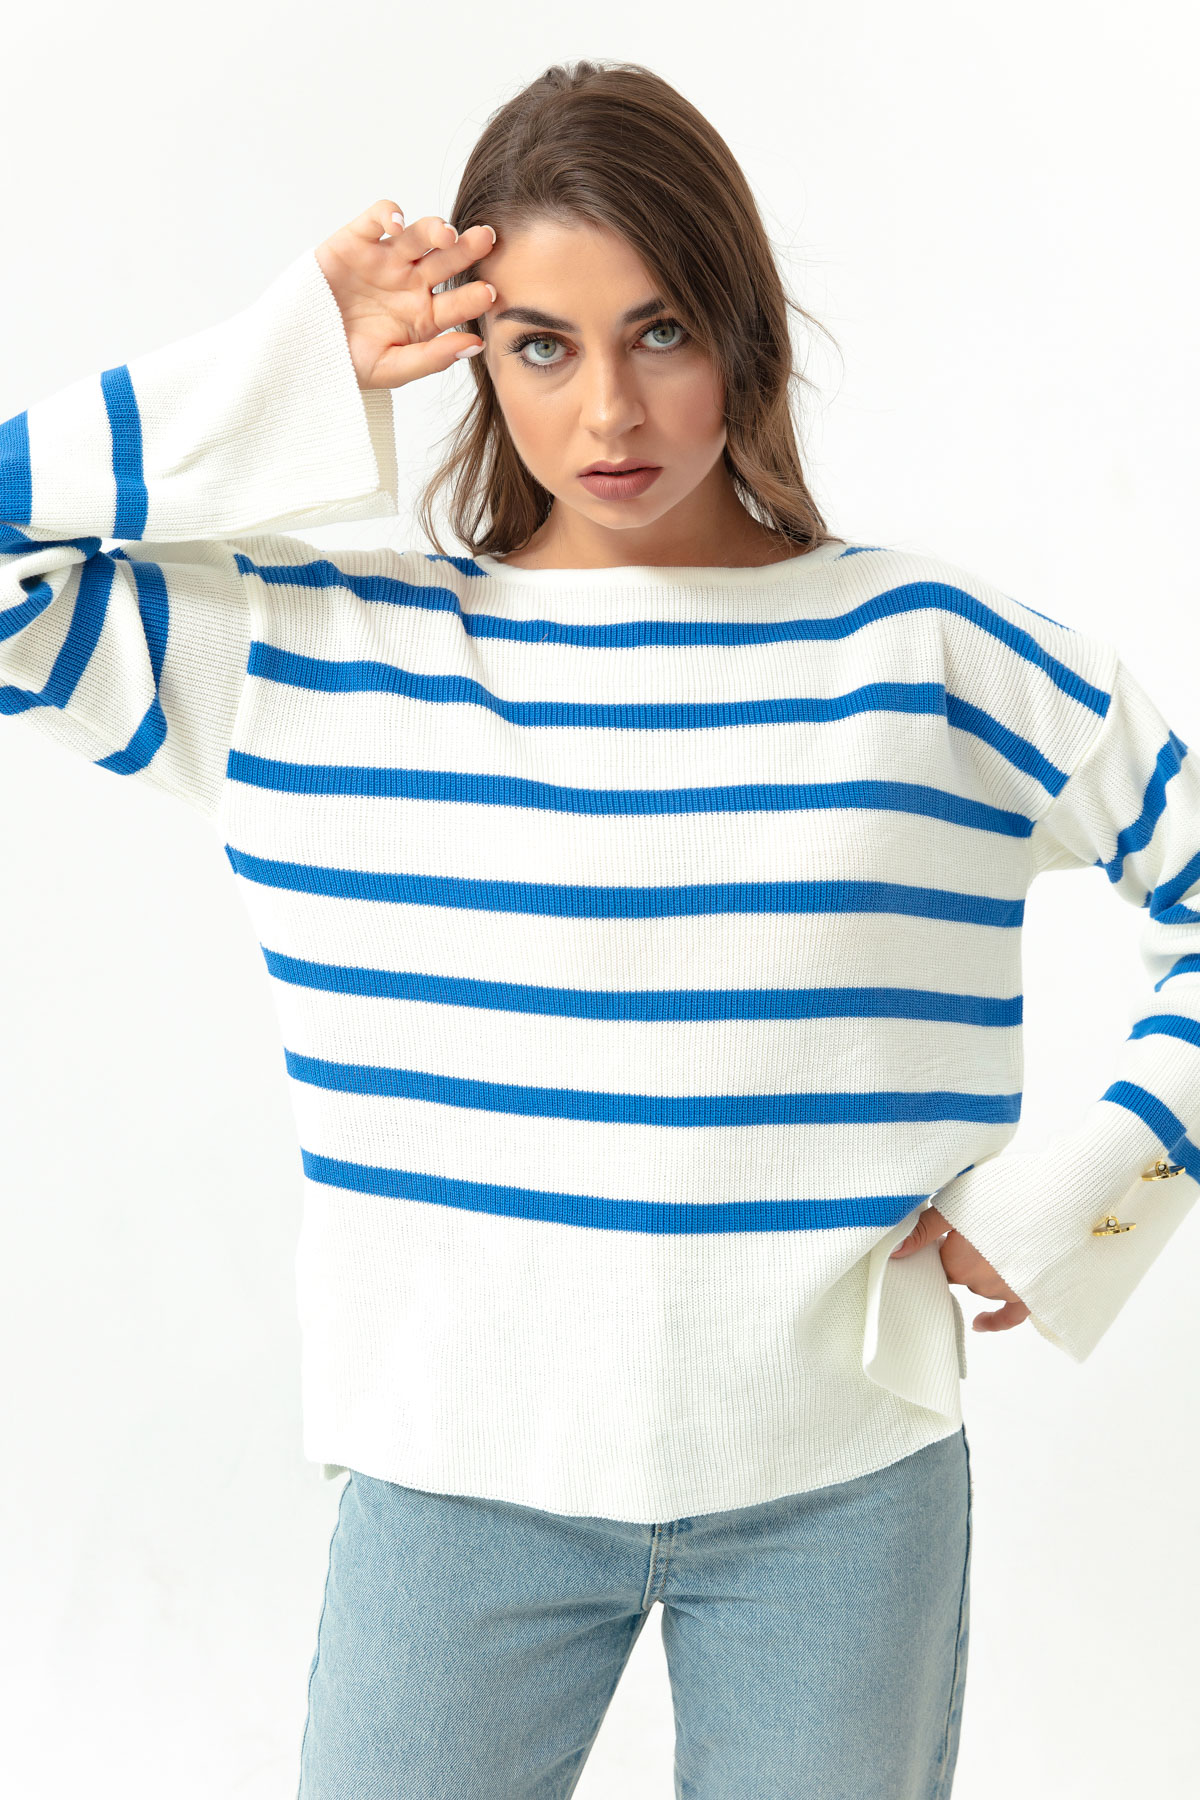 Women's Blue Boat Neck Striped Knitwear Sweater